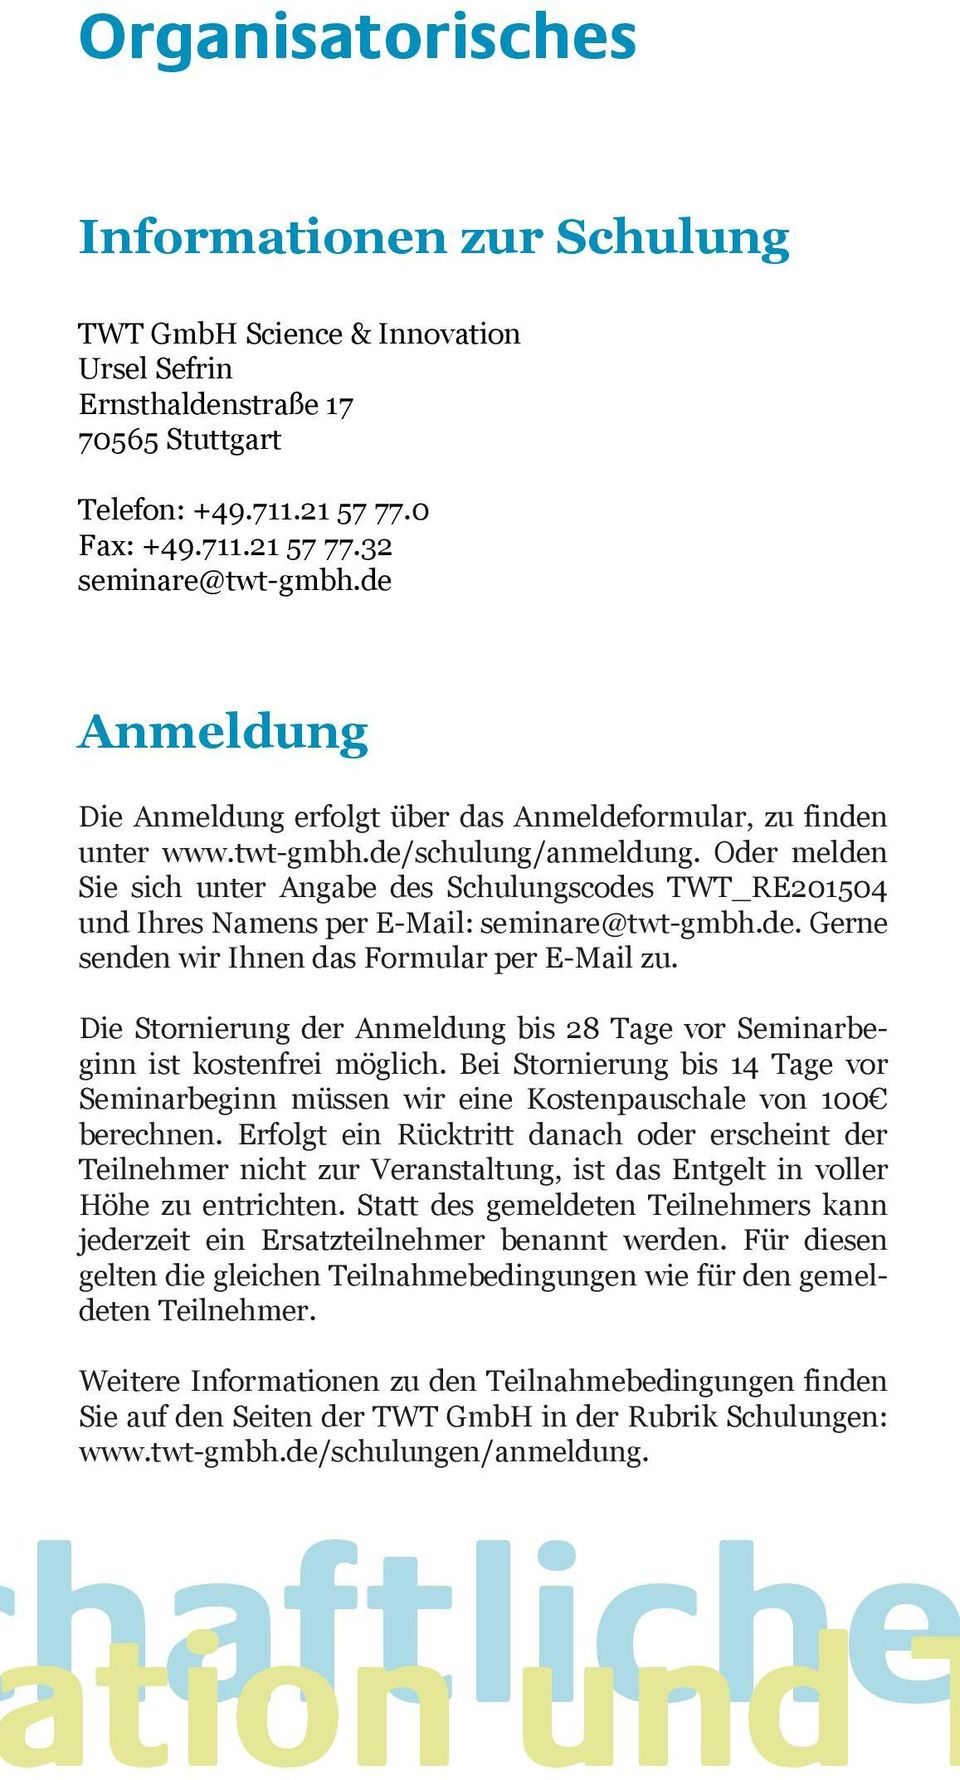 Oder melden Sie sich unter Angabe des Schulungscodes TWT_RE201504 und Ihres Namens per E-Mail: seminare@twt-gmbh.de. Gerne senden wir Ihnen das Formular per E-Mail zu.